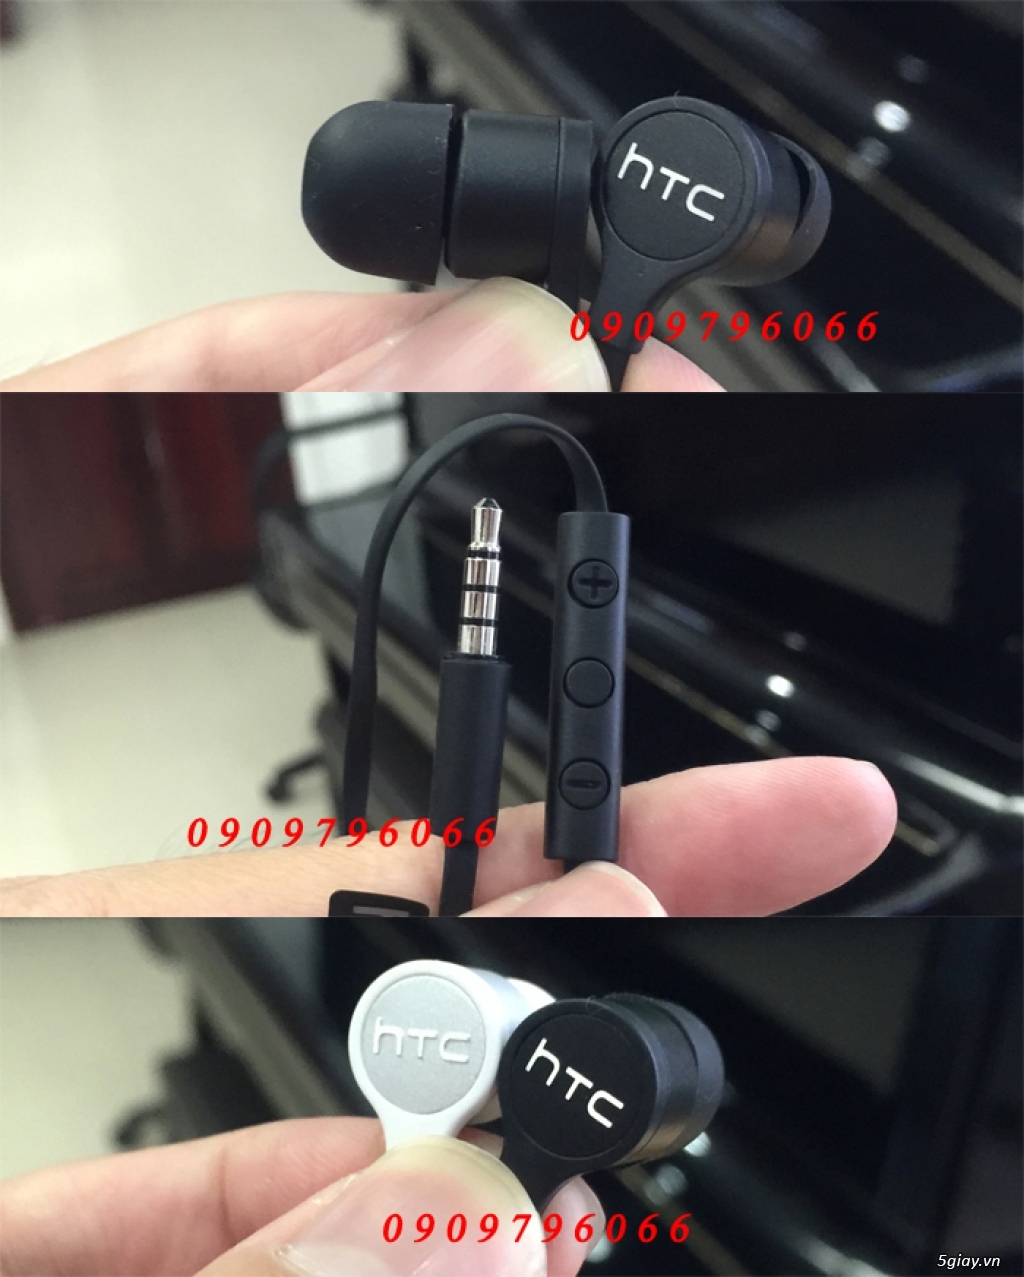 PKSTORE.VN >>> Tai nghe - Sạc - Cáp: HTC | APPLE | SamSung | Sony | LG| LUMIA| Beats...chính hãng<<< - 30